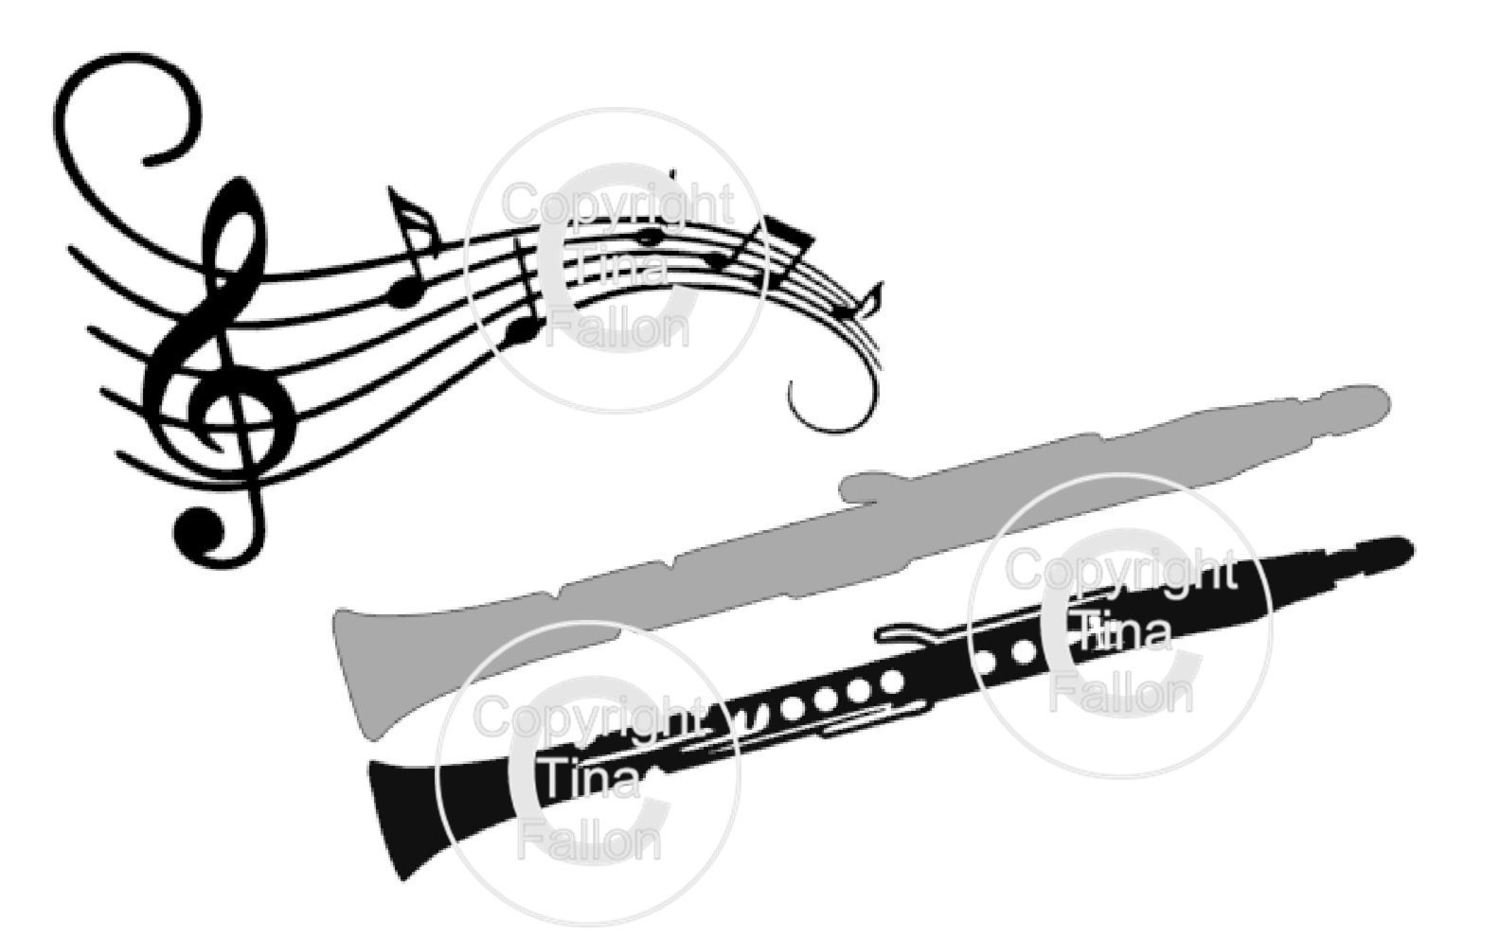 Layered Clarinet and music